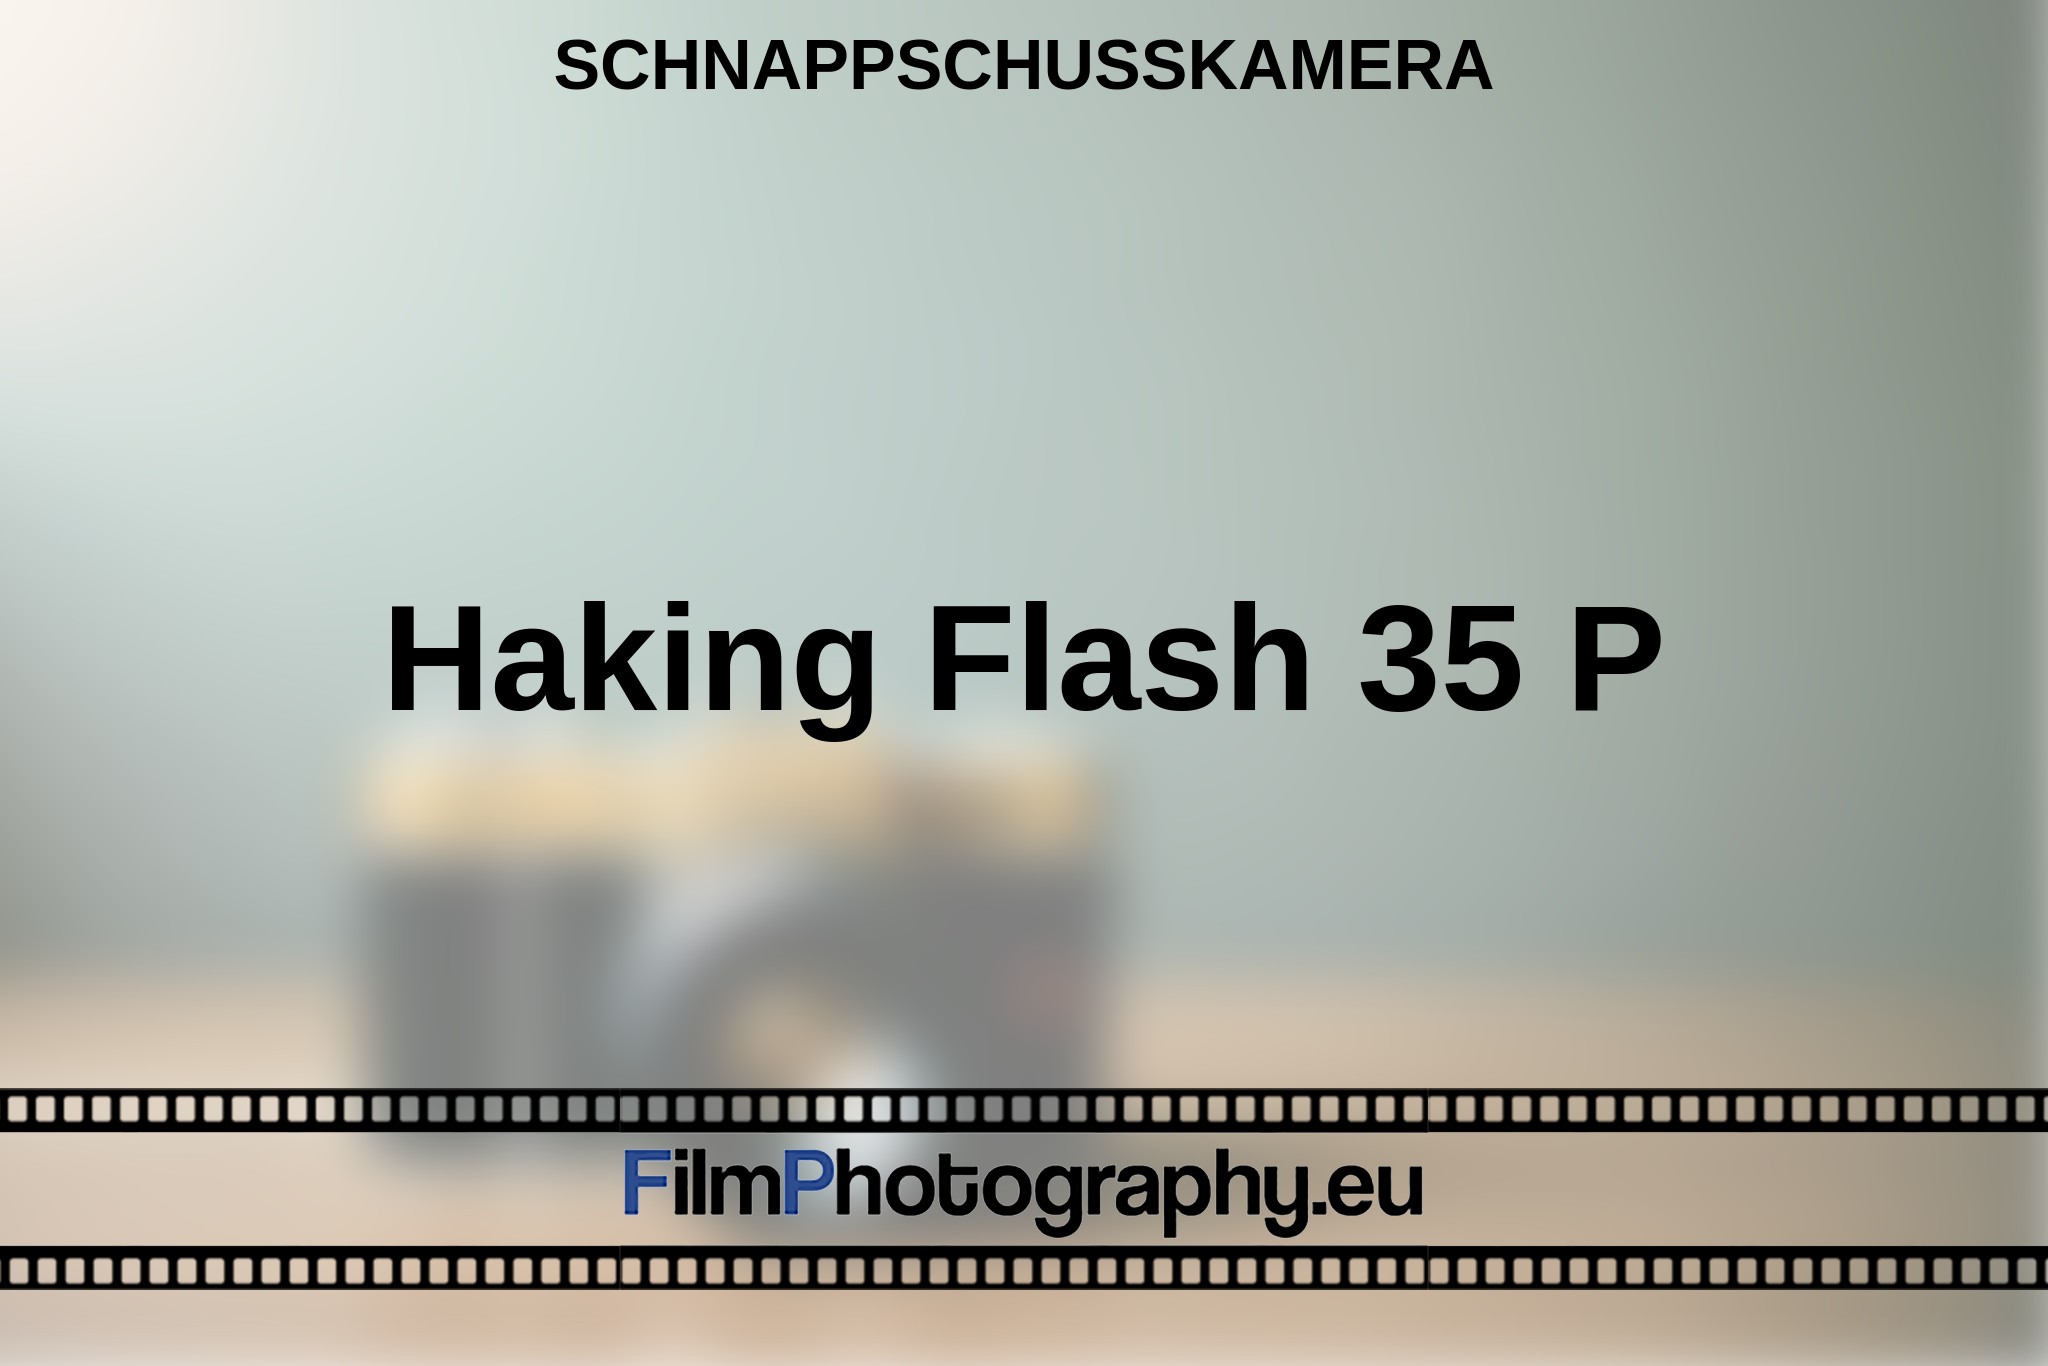 haking-flash-35-p-schnappschusskamera-bnv.jpg